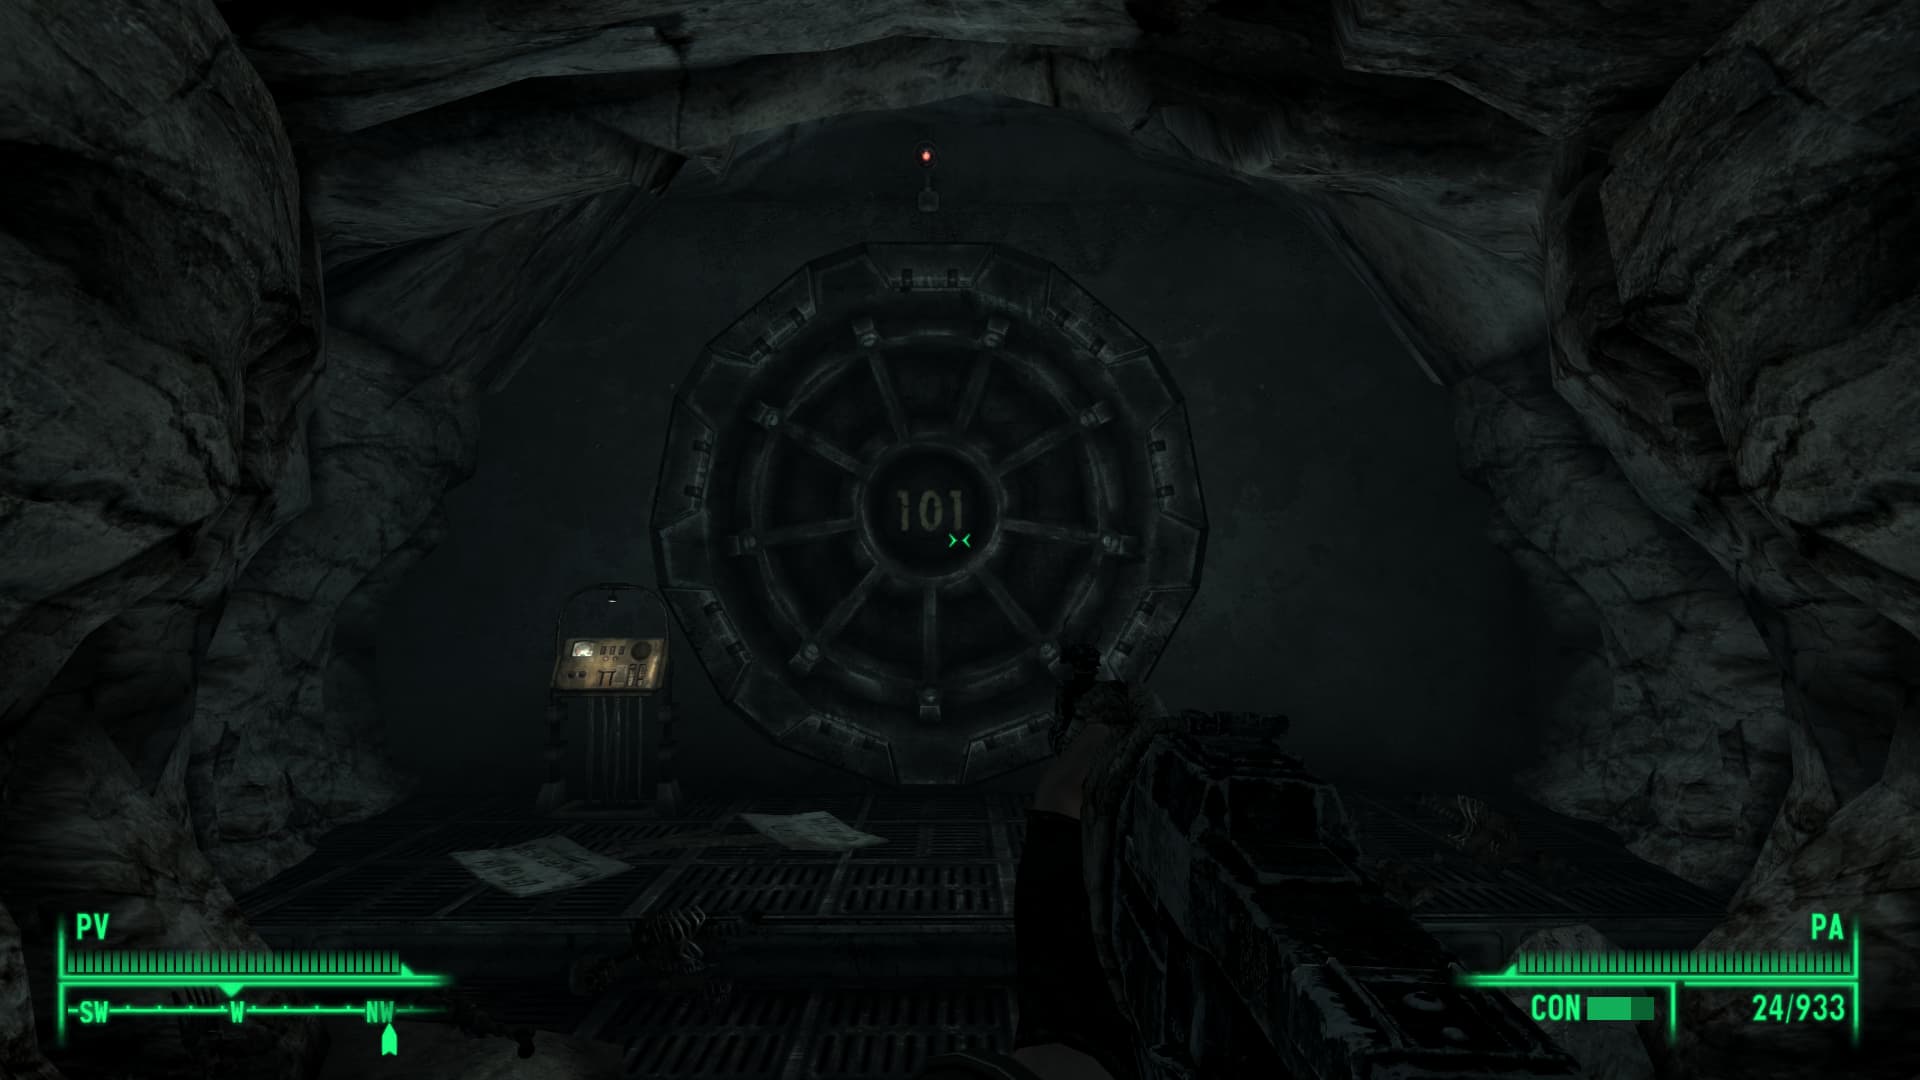 Imagen de Fallout 3, la puerta del refugio 101 hecho a mano